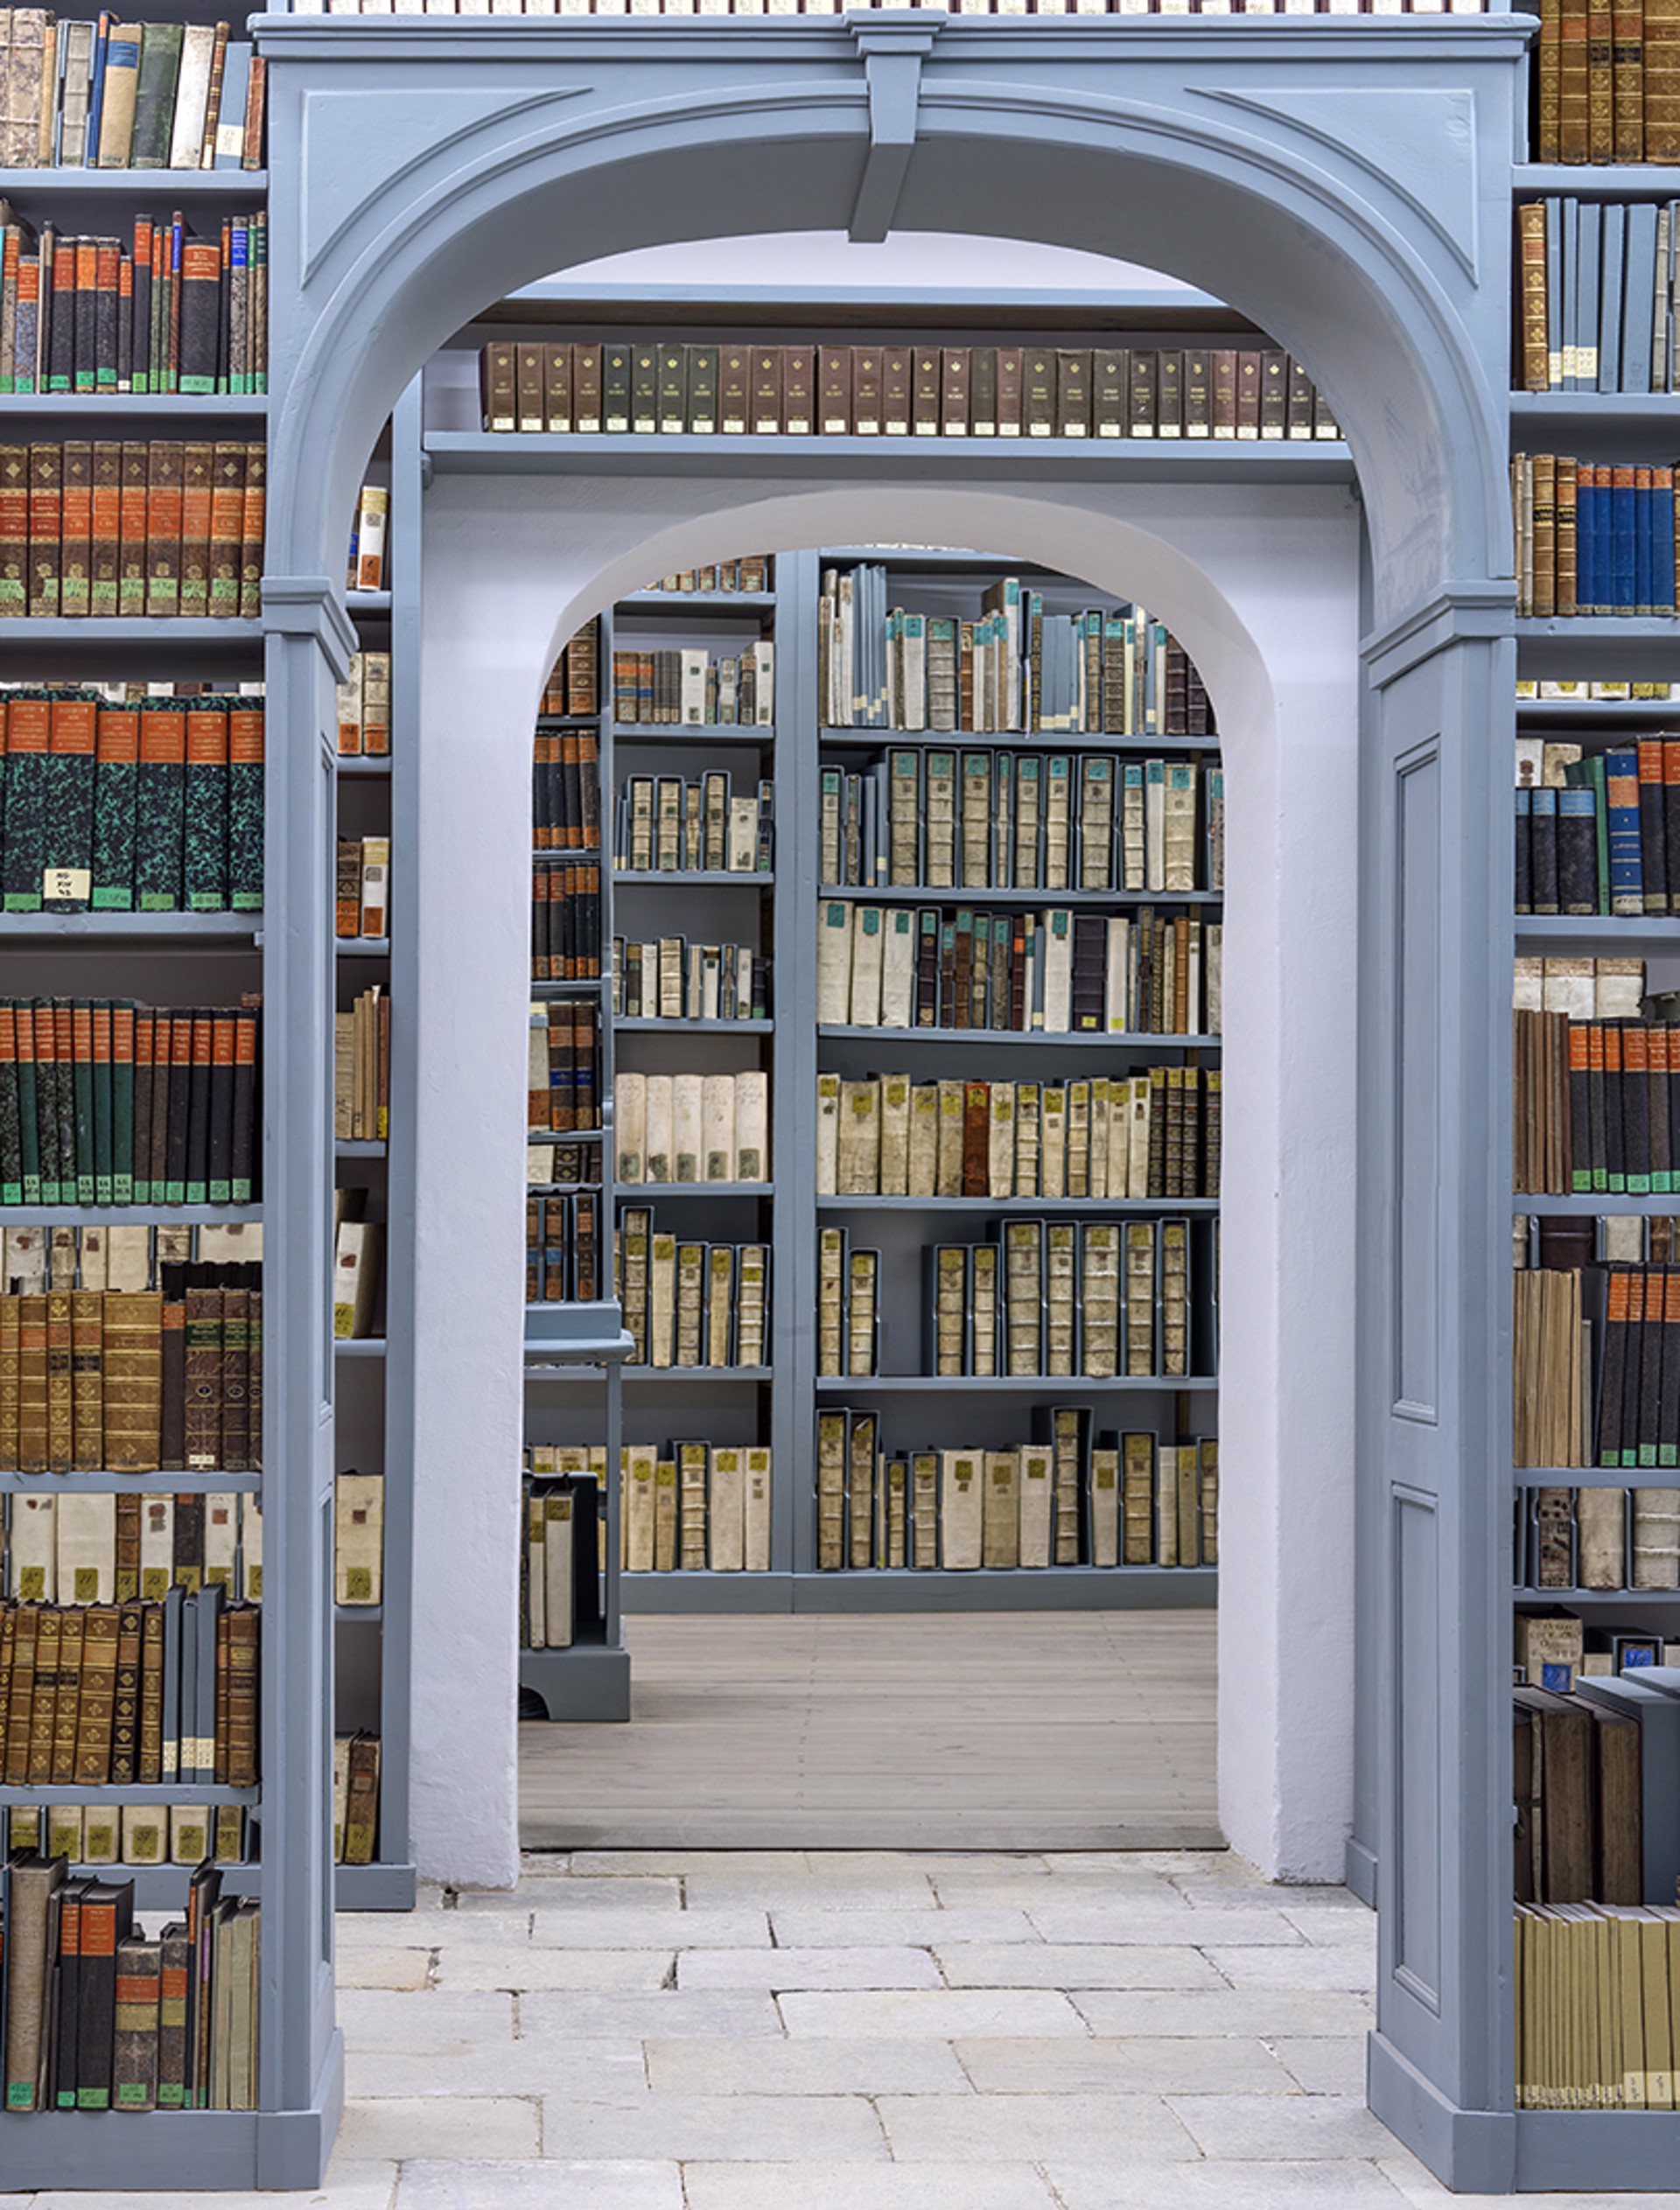 Milich'sche Library lll by Reinhard Goerner